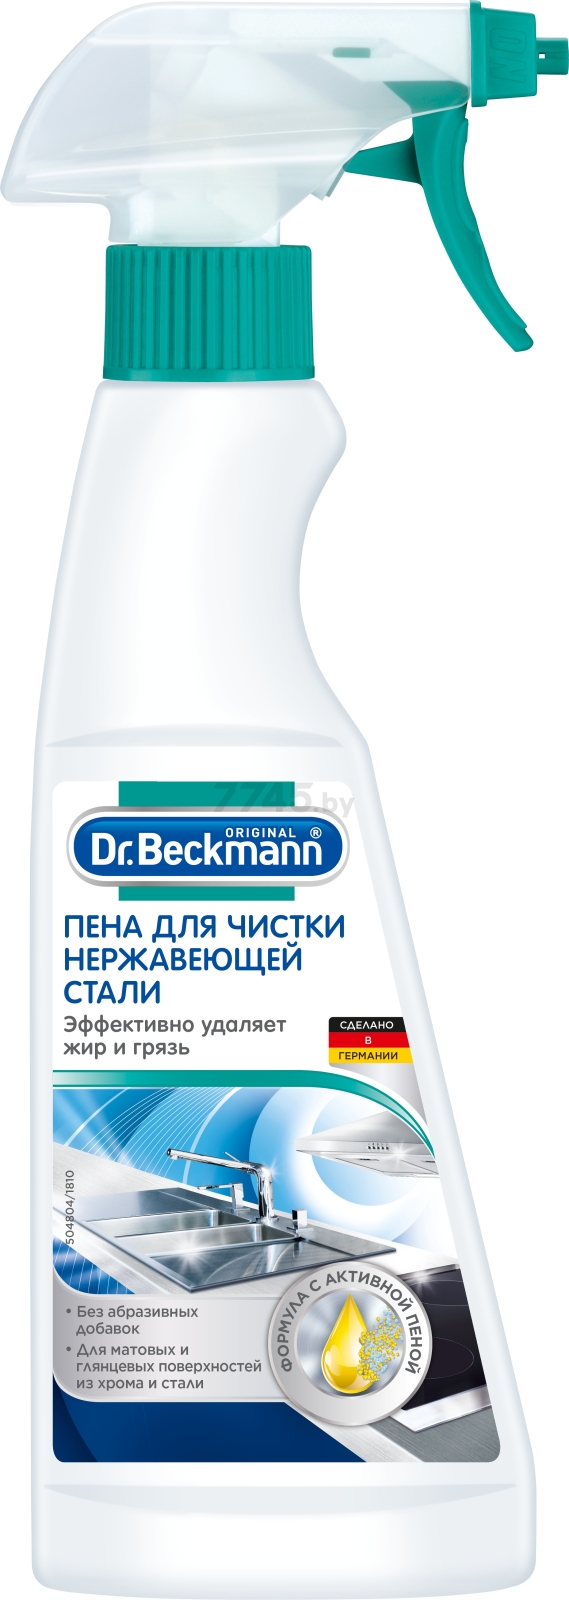 Средство чистящее DR.BECKMANN Для нержавеющей стали 0,25 л (4008455020310)